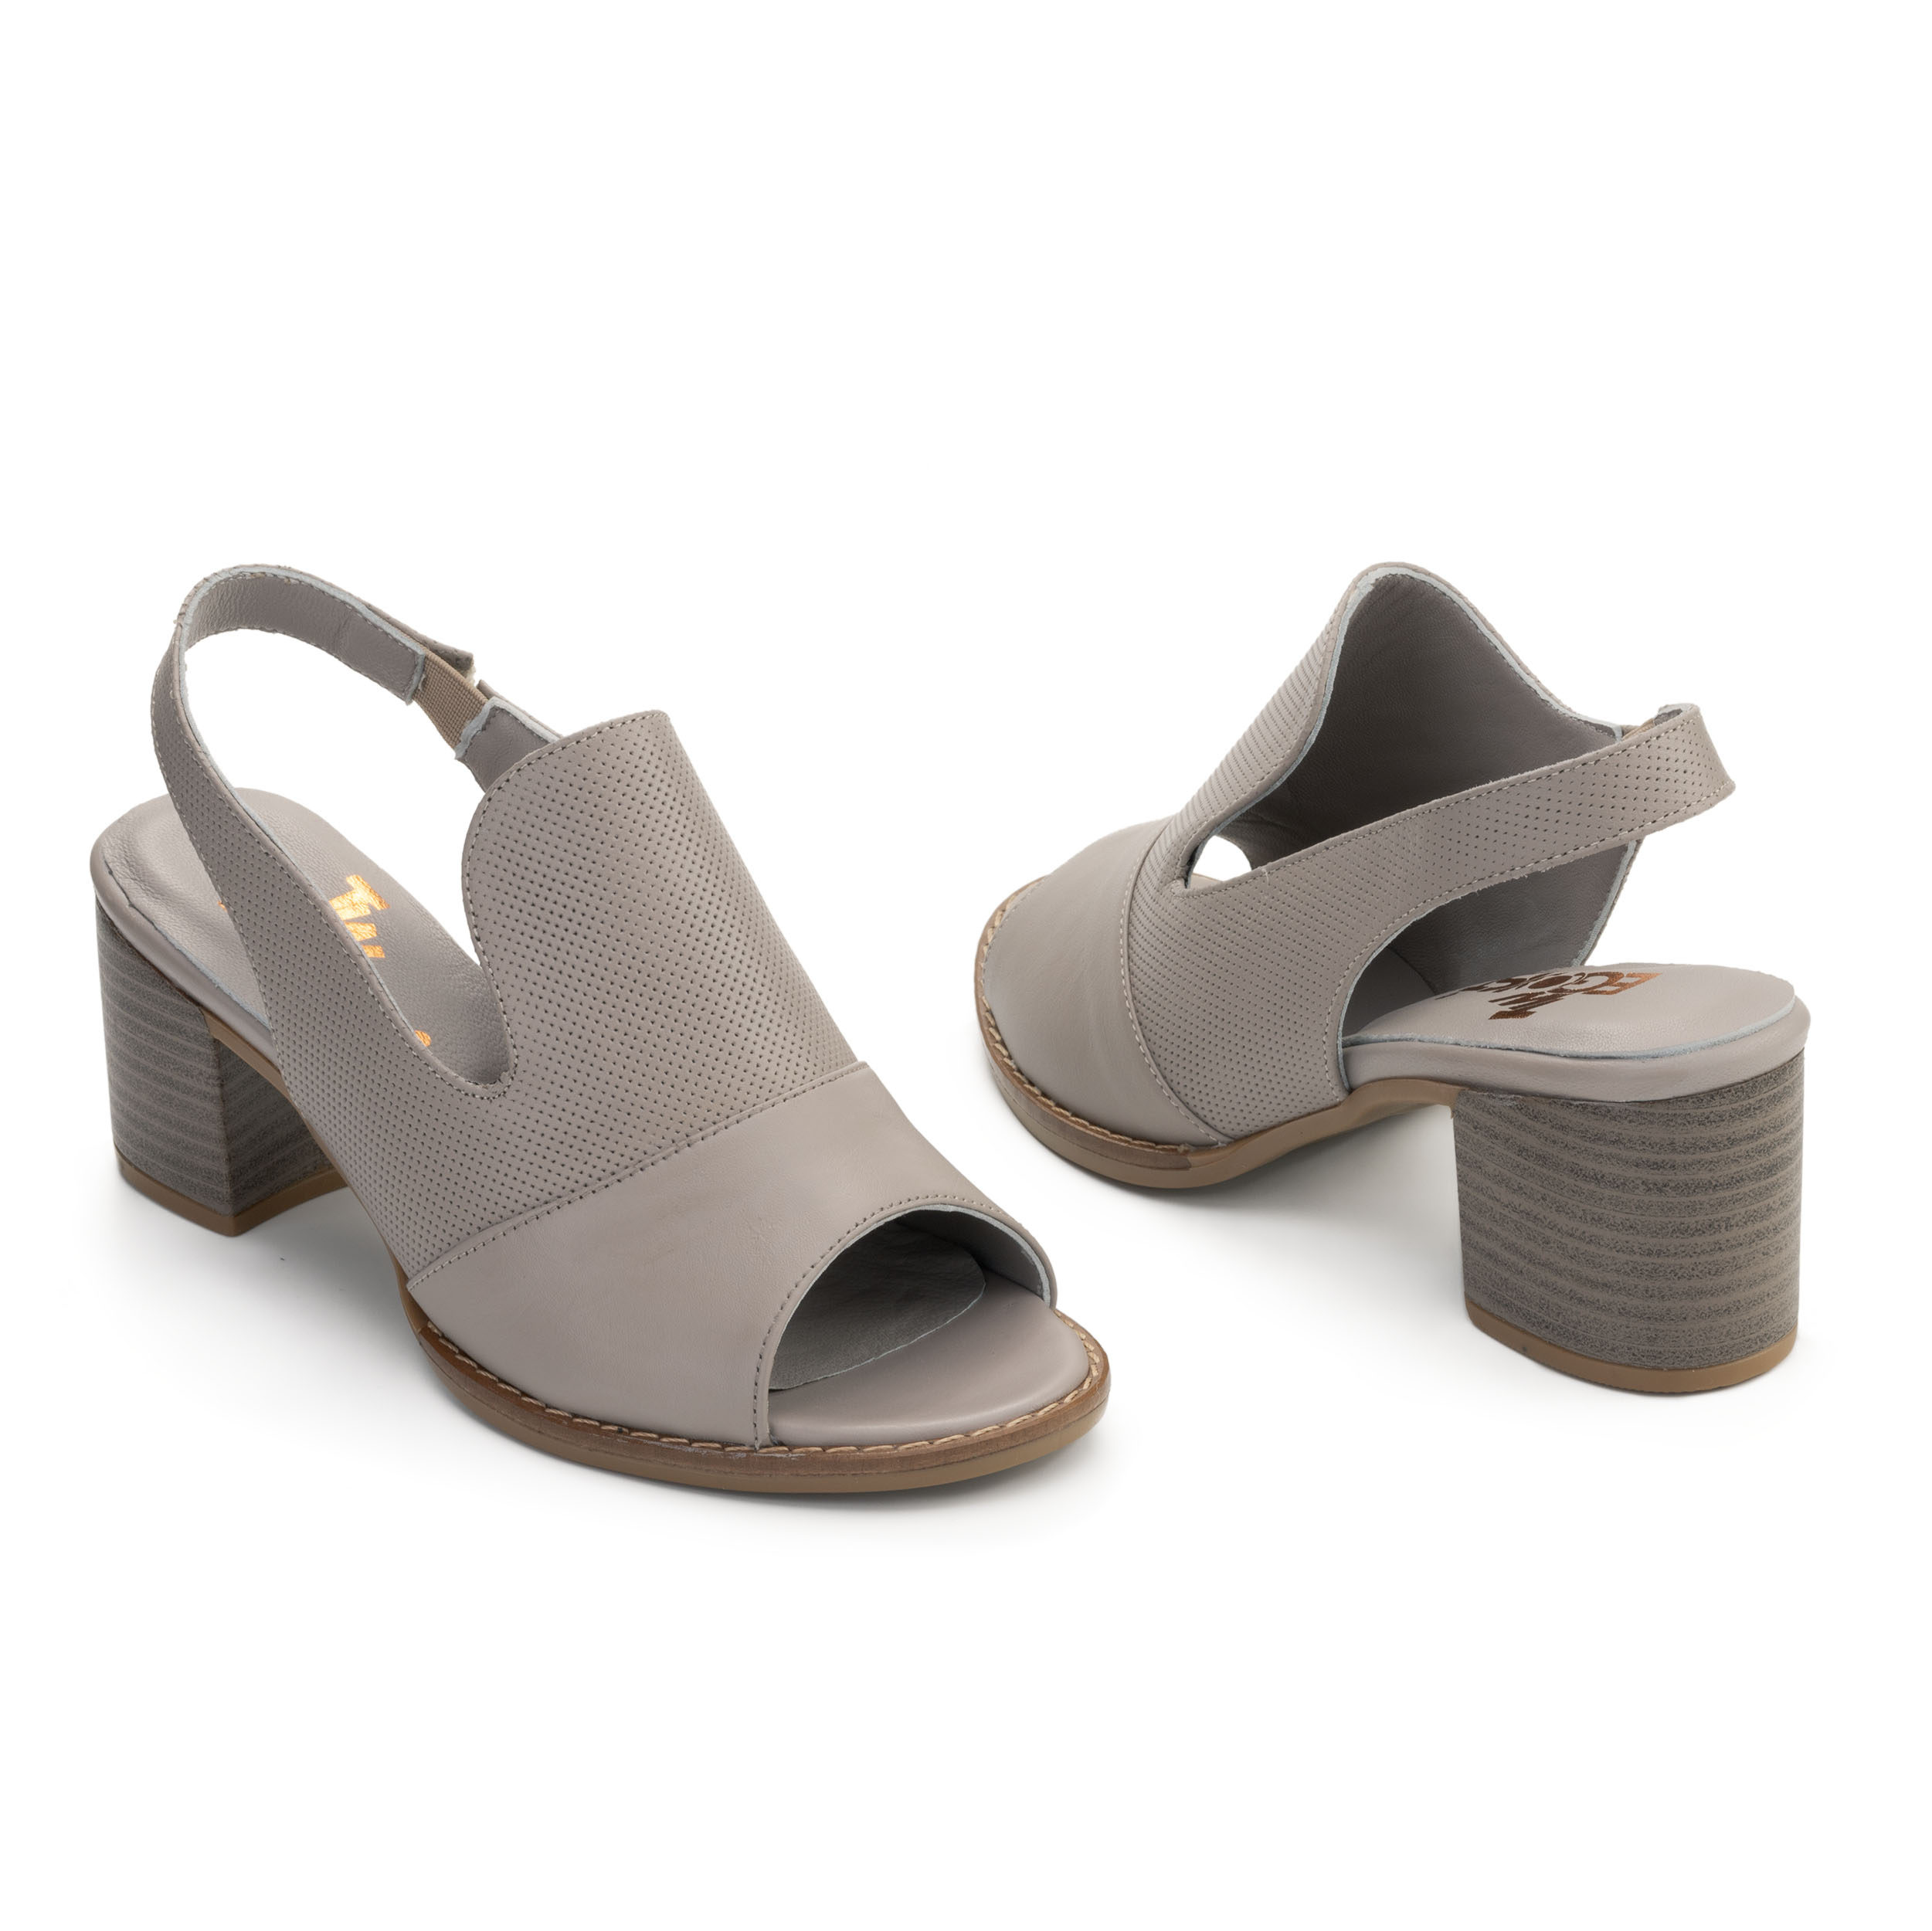 TwoEgoist Kadın Hakiki Deri Topuklu Şık Sandalet - Açık Ayakkabı, Renk: Vizon, Beden: 36